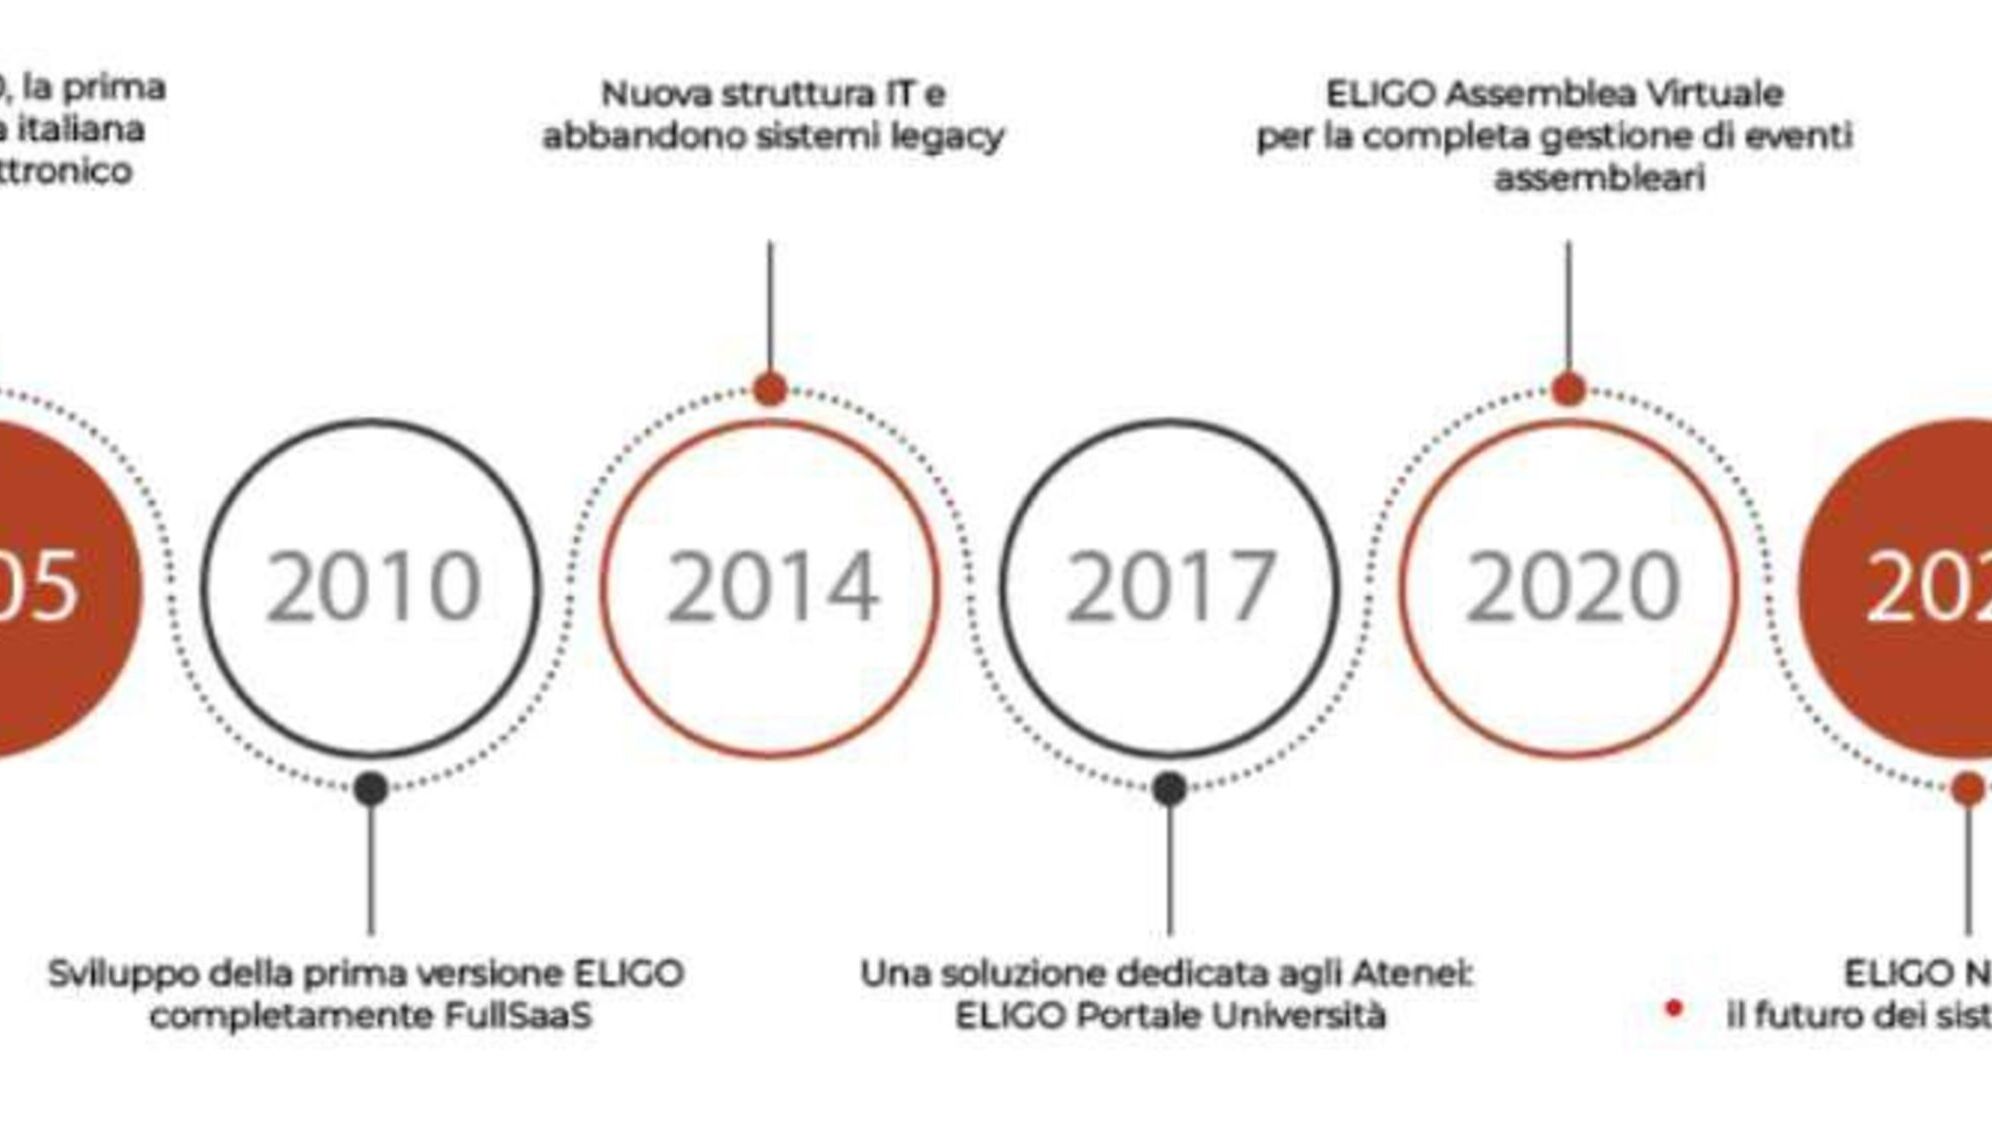 Елиго Следно: интересен инфографик преземен од официјалната брошура за презентација на новата електронска и онлајн платформа за гласање Елиго Следна